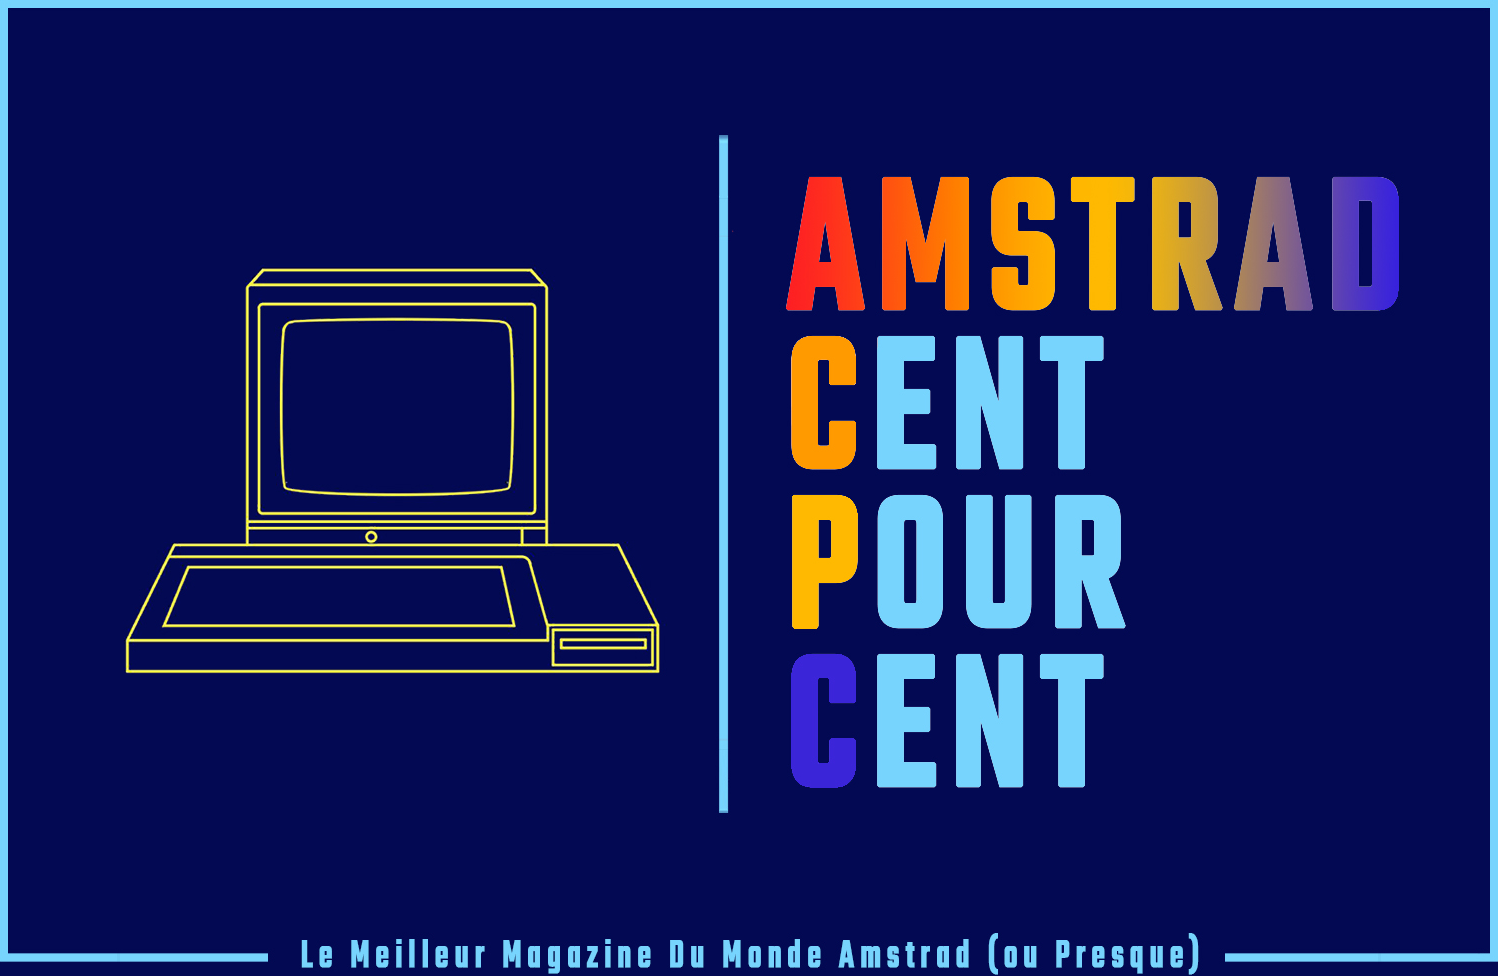 Amstrad Cent Pour Cent